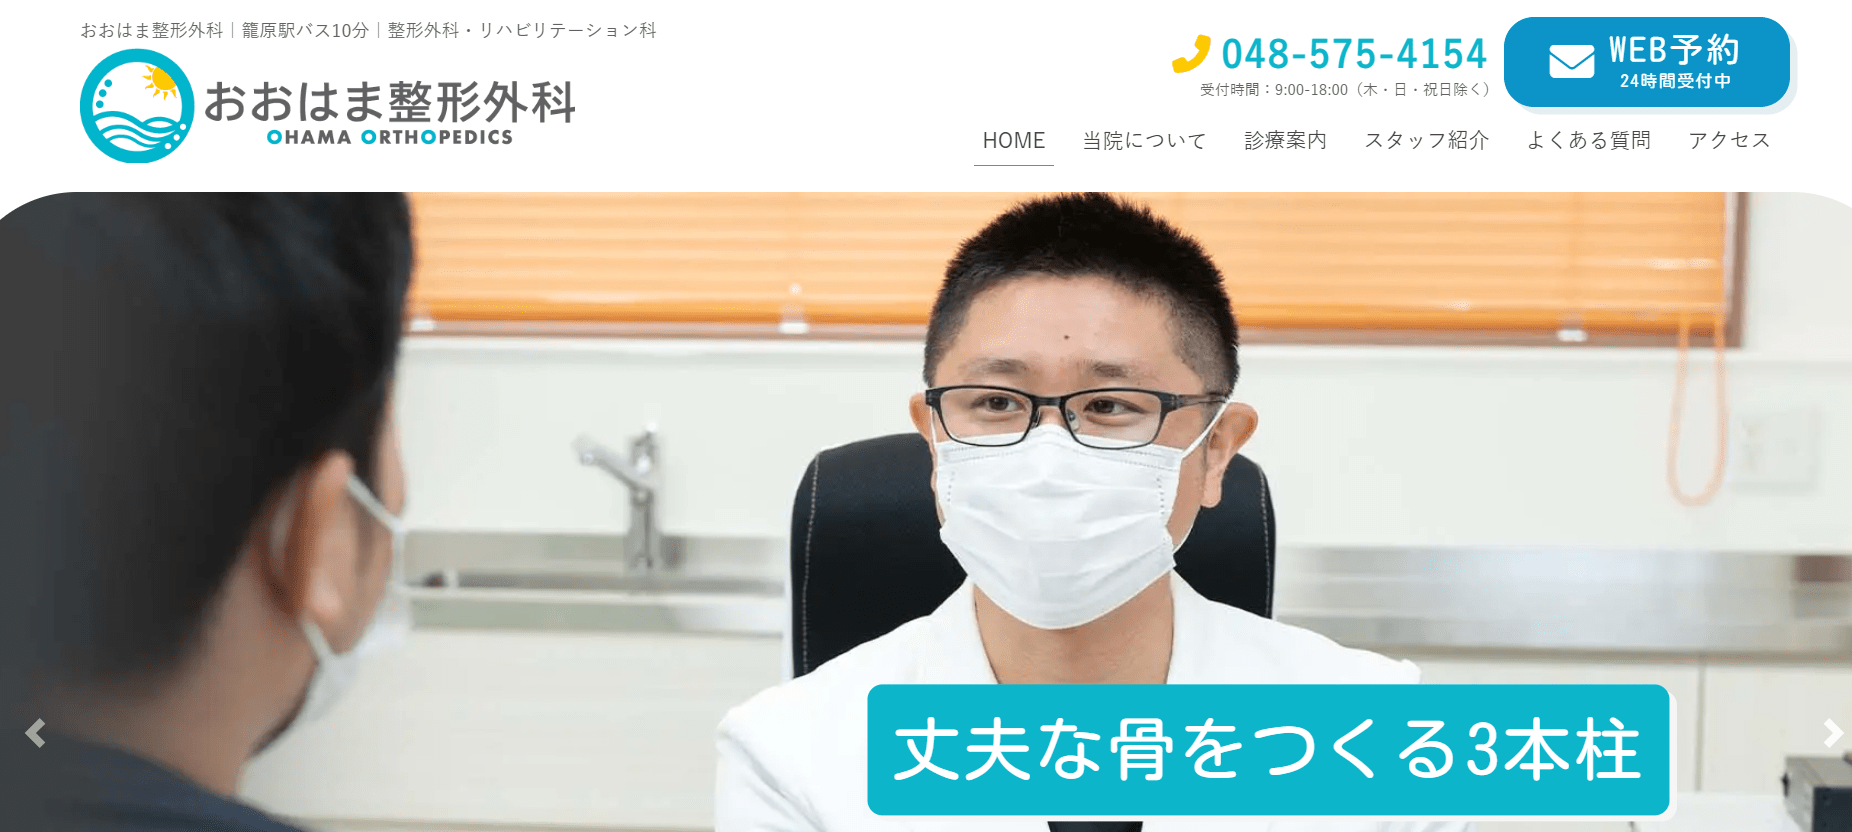 埼玉県で評判の整形外科クリニックおすすめ10選 おおはま整形外科